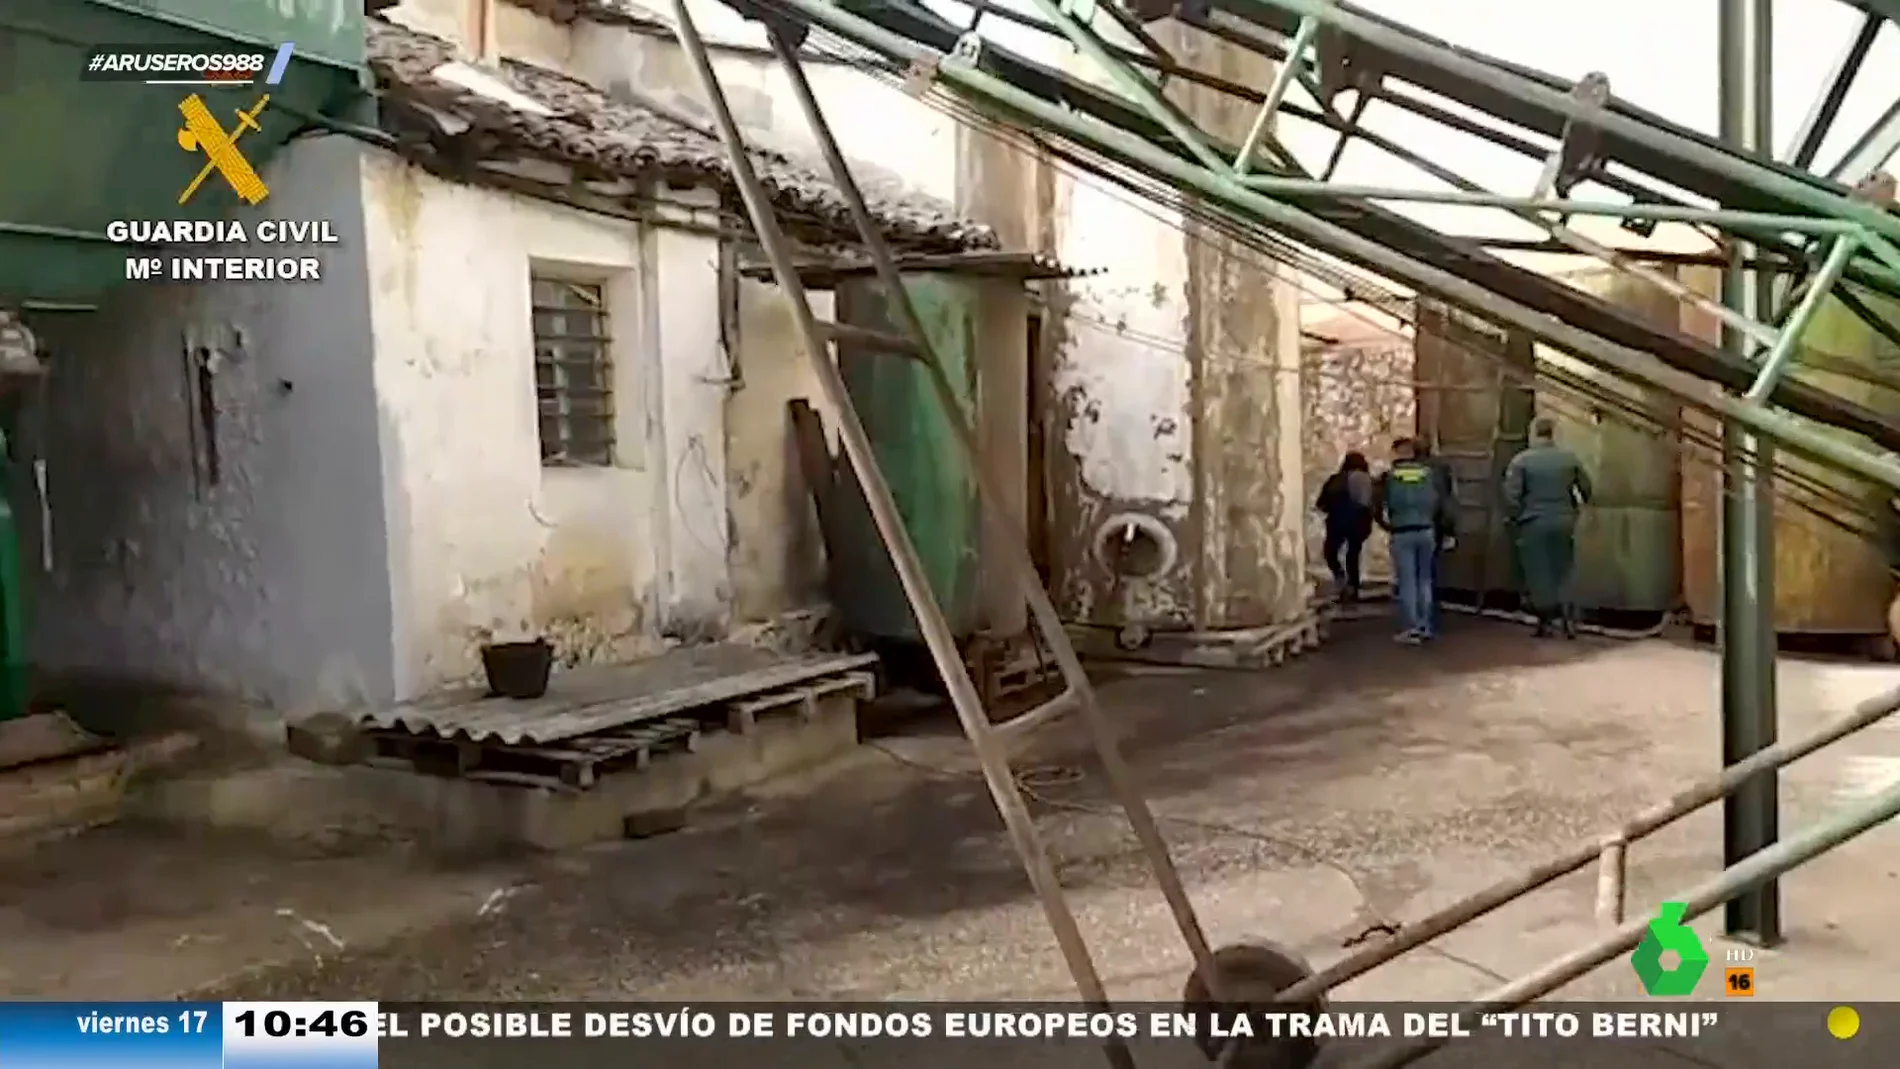 Dieciséis detenidos por robar más de 17 toneladas de aceitunas en la comarca de Las Vegas, Madrid